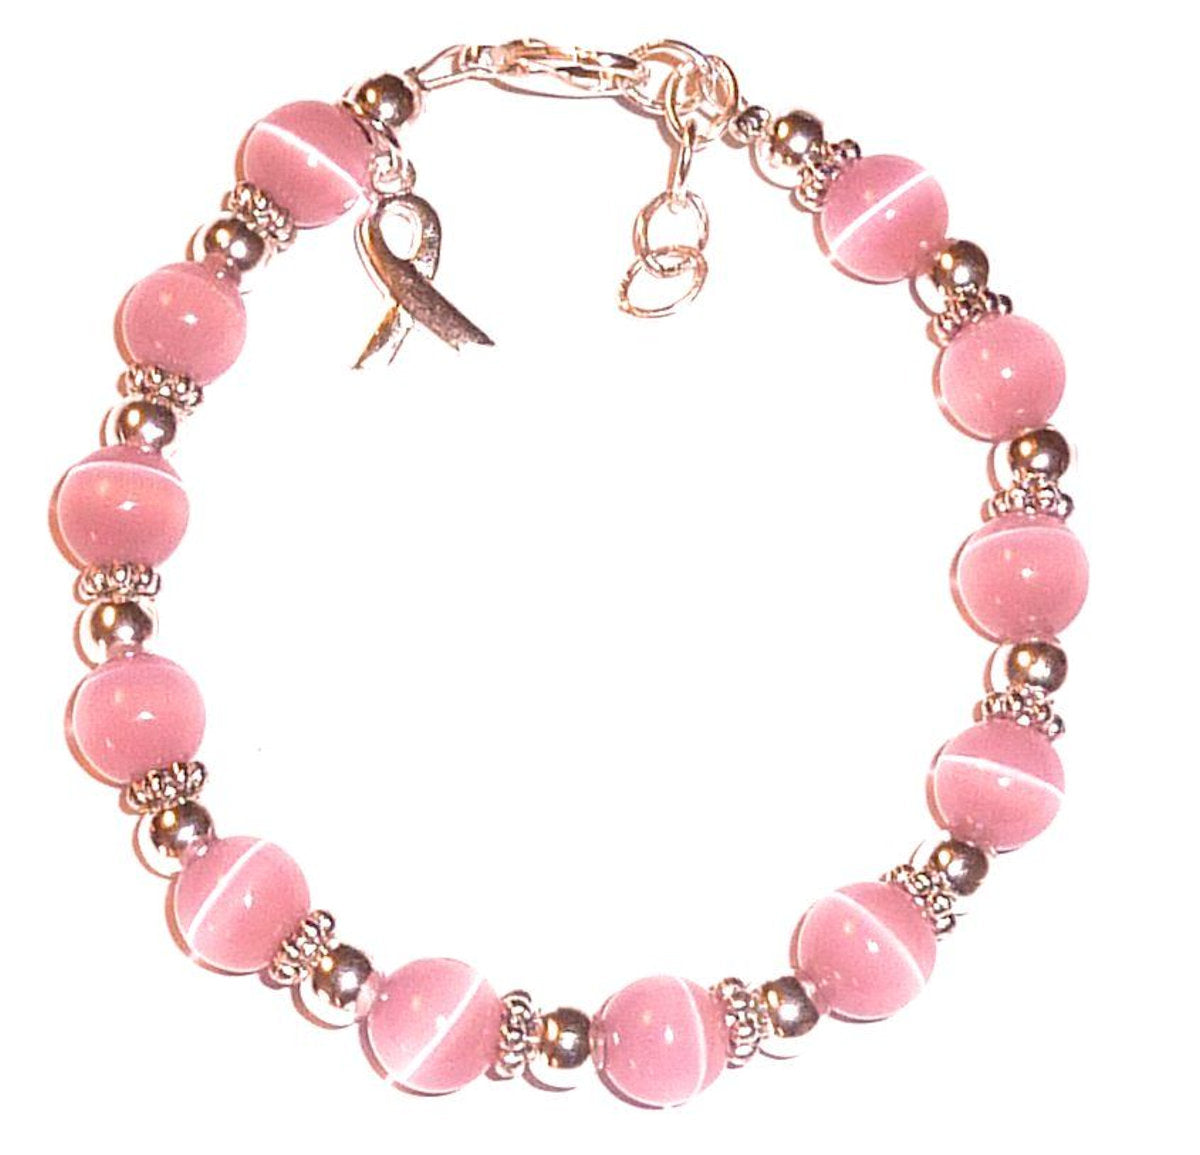 Pink Breast Cancer Awareness Packaged Bracelet - 8mm